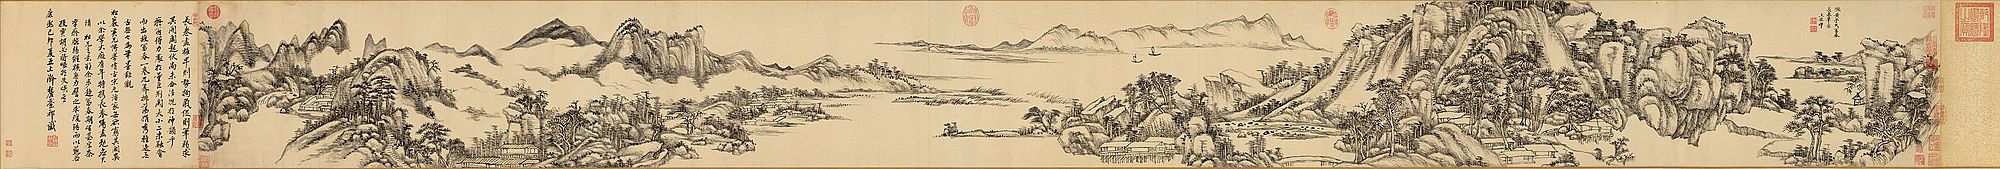 De Fuchun-bergen door Wang Yuanqi, handrol uit 1699[2]